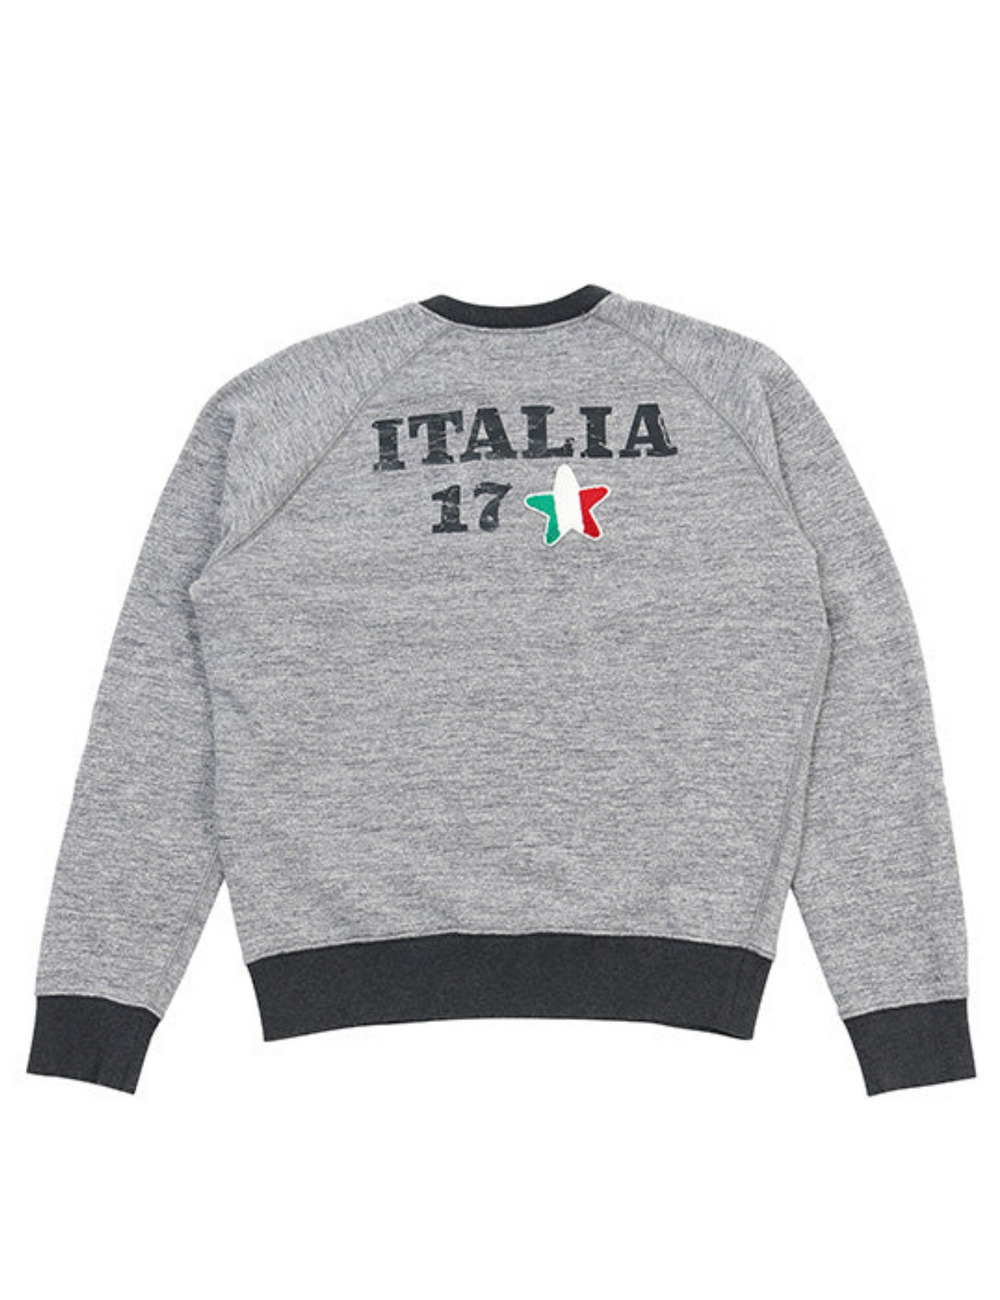 イタリア17 ブラックリブスウェットシャツ / ITALIA 17 BLK LIB SWEATSHIRT 詳細画像 ライトグレー 2